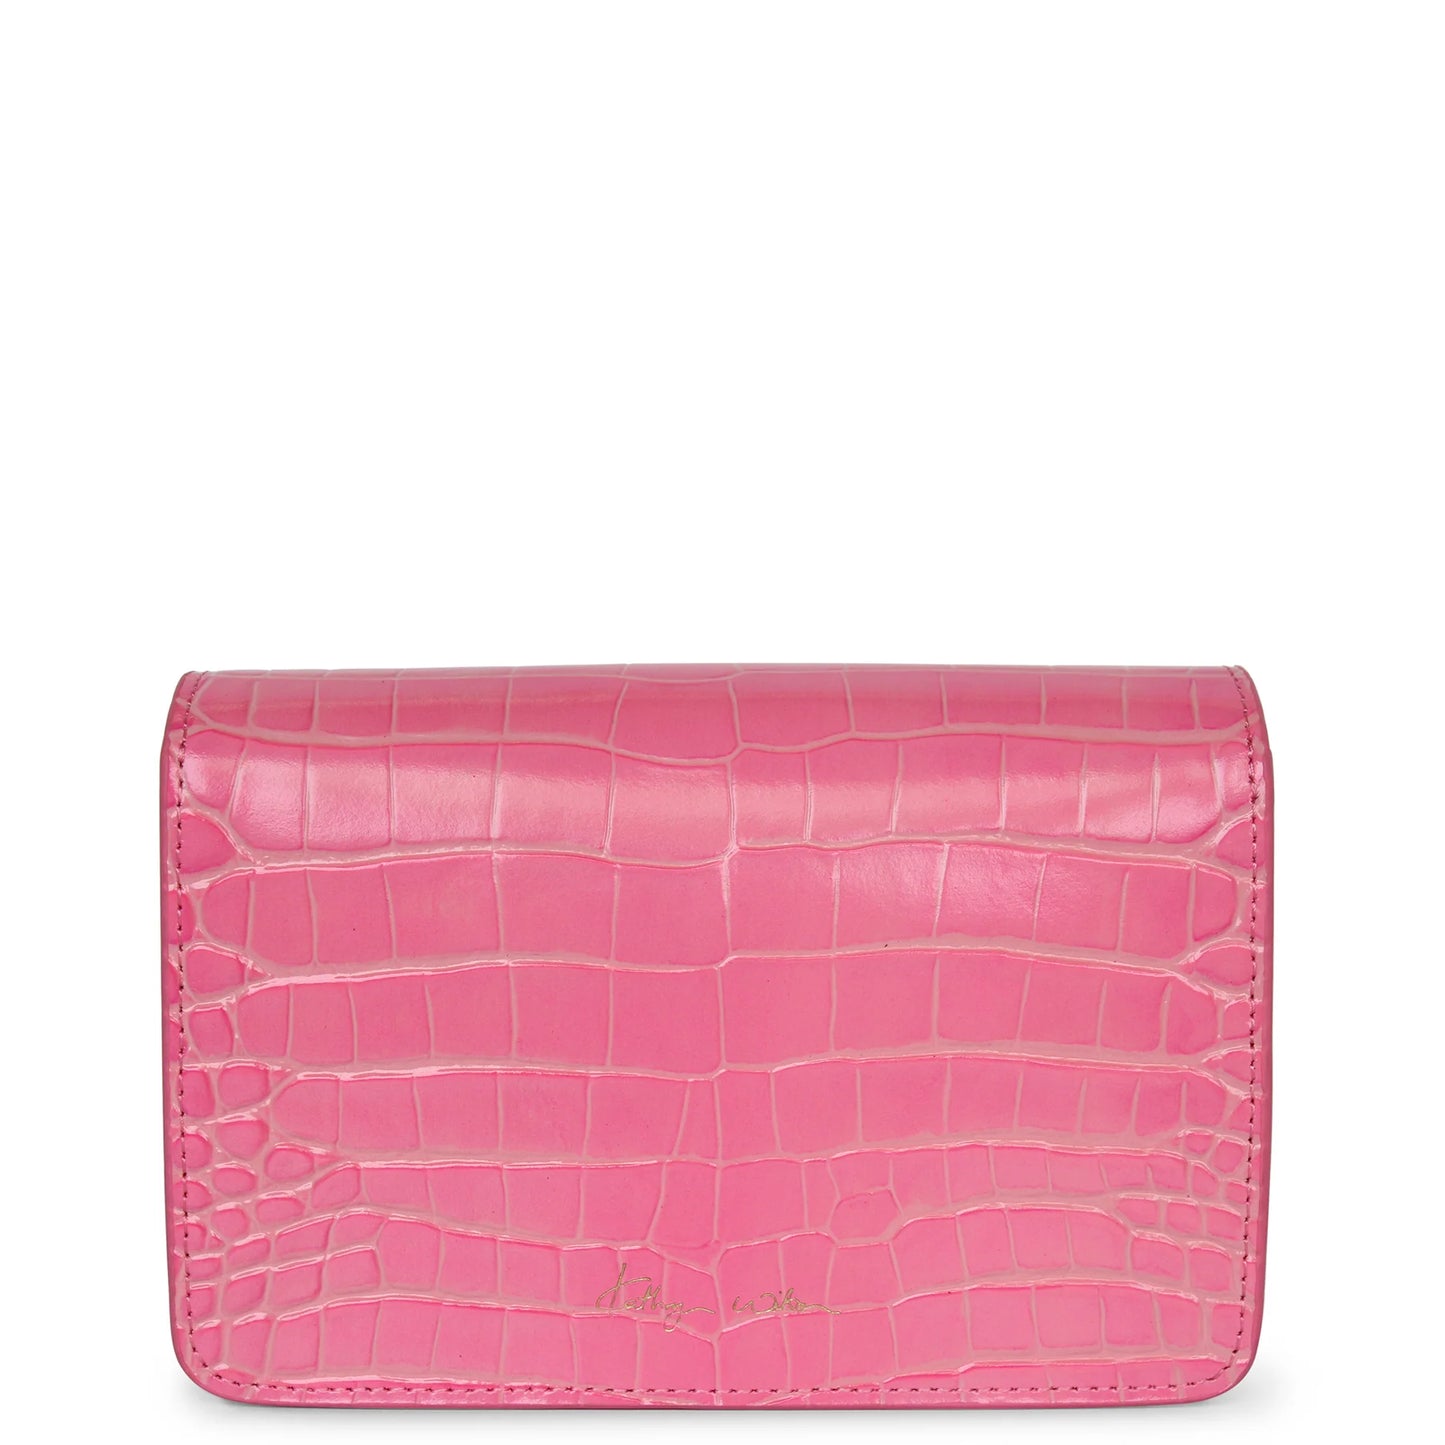 Franco Bag By Kathryn Wilson - Dolly Pink Croc